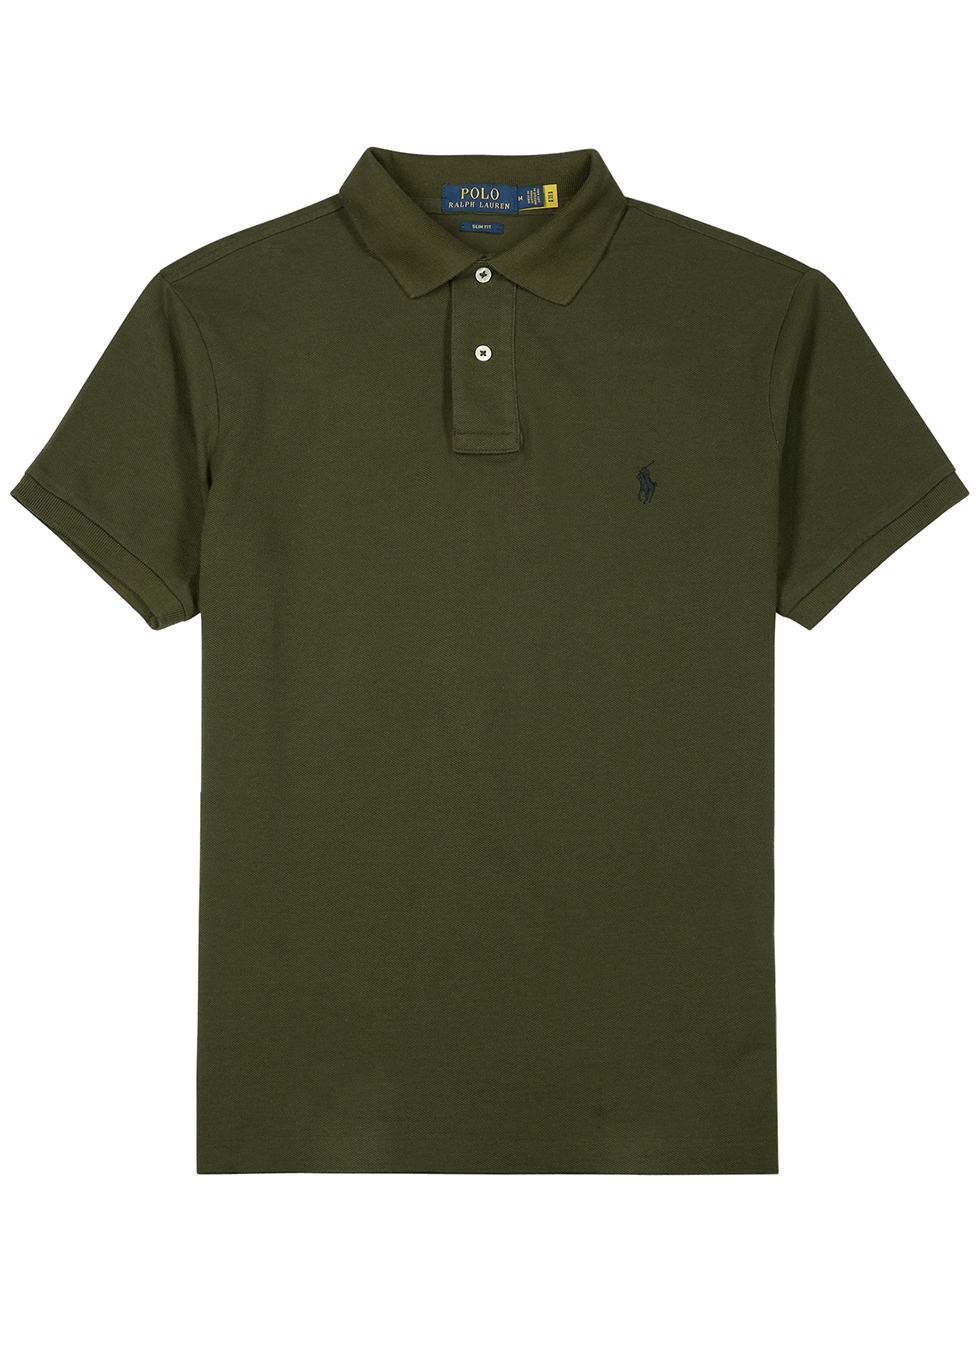 army green ralph lauren shirt